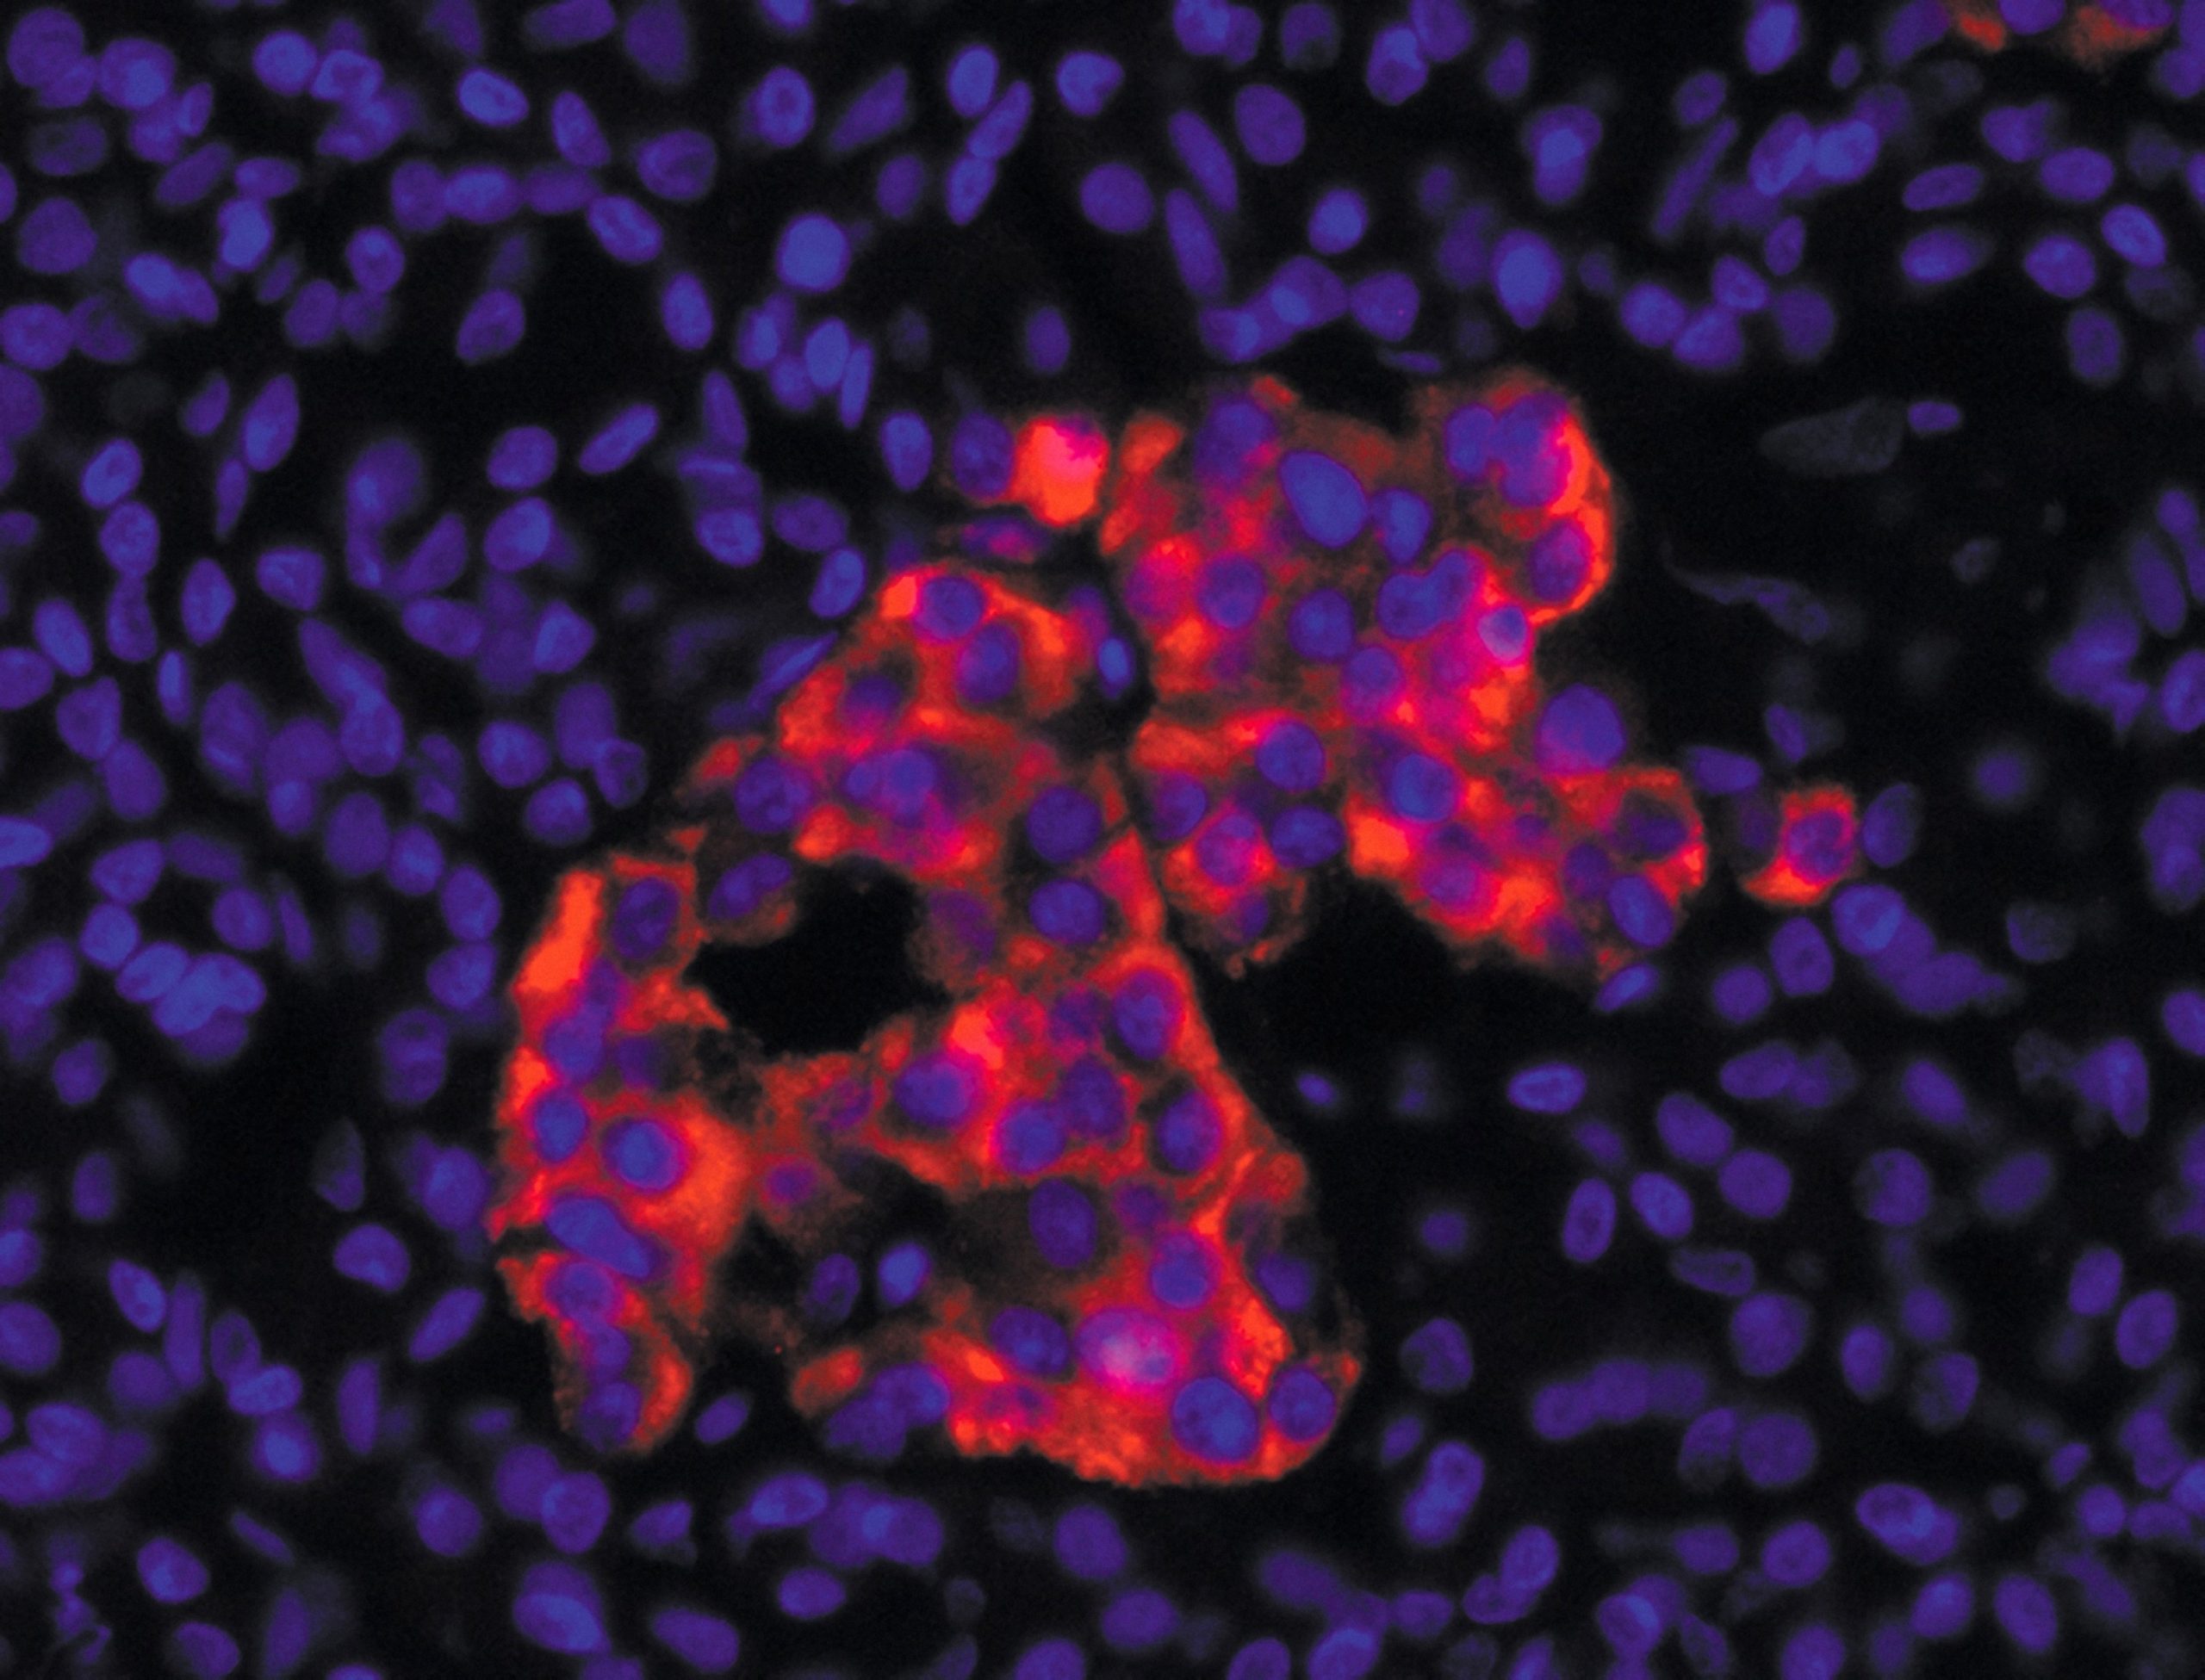 Cellules β pancréatiques humaines produisant l’insuline (en rouge). L’ADN des cellules est marqué en bleu.